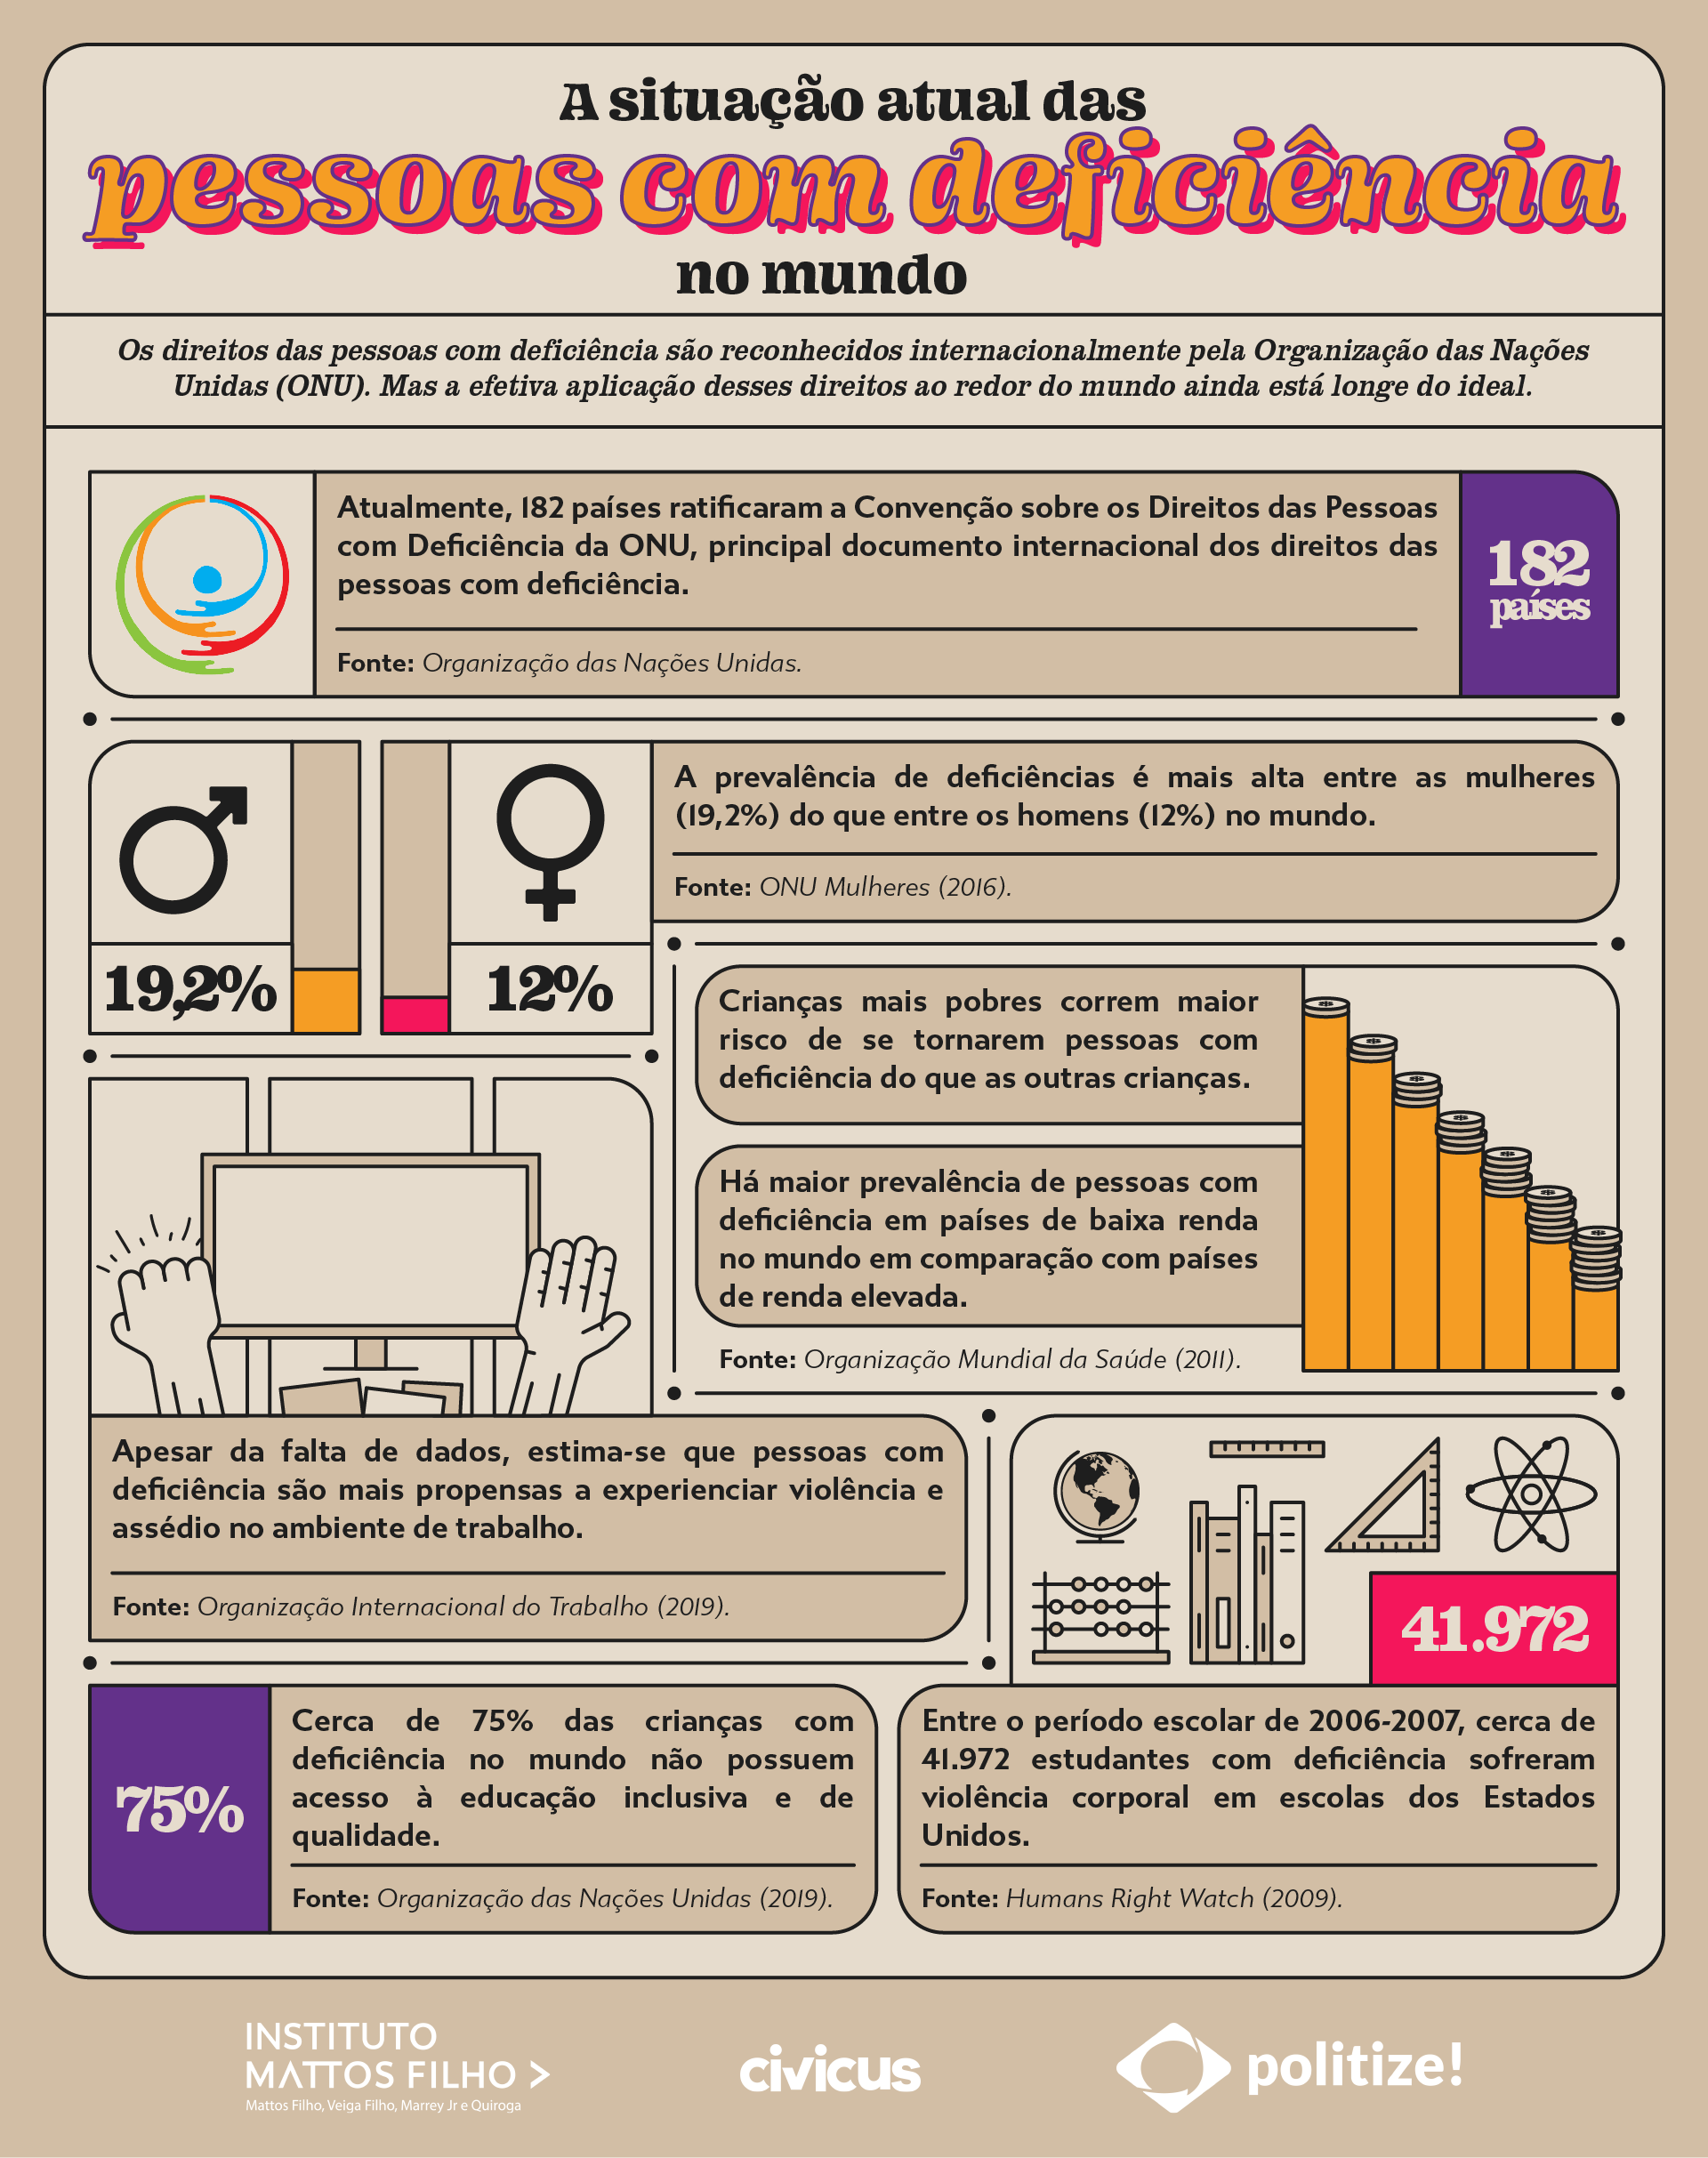 Infográfico com informações sobre a situação atual dos direitos das pessoas com deficiência no mundo